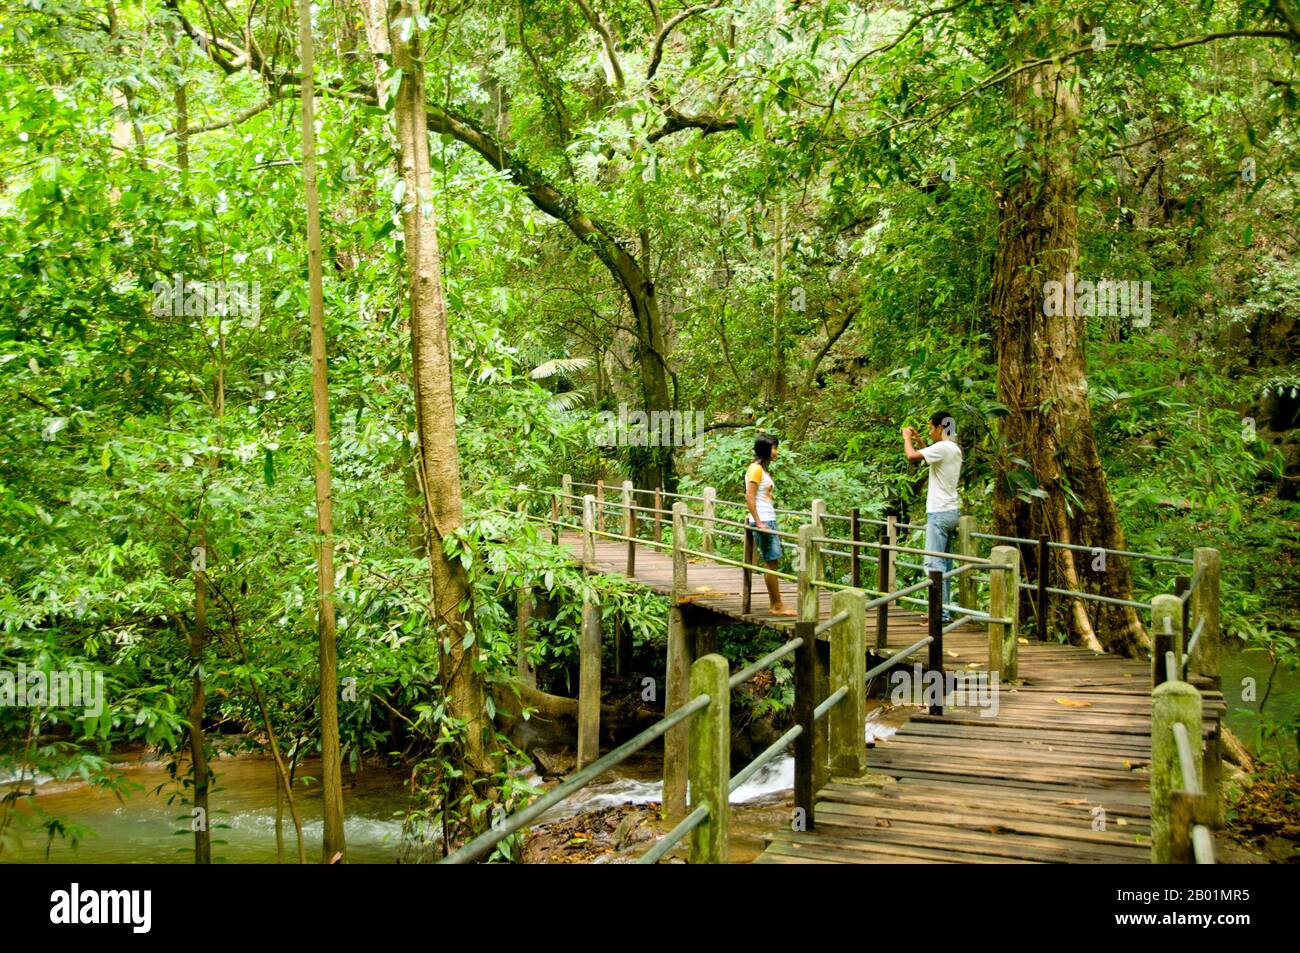 Thailandia: Visitatori thailandesi su una passerella nel Parco Nazionale Than Bokkharani, provincia di Krabi. Il Parco Nazionale di Than Bokkharani si trova nella provincia di Krabi a circa 45 chilometri (28 miglia) a nord-ovest della città di Krabi. Il parco copre un'area di 121 chilometri quadrati (47 miglia quadrate) ed è caratterizzato da una serie di affioramenti calcarei, foreste pluviali sempreverdi, foreste di mangrovie, torbiere e molte isole. Ci sono anche numerose grotte e complessi rupestri con alcune spettacolari stalagmiti e stalattiti. Il Bokkharani è incentrato su due famose grotte, Tham Lot e Tham Phi Hua. Foto Stock